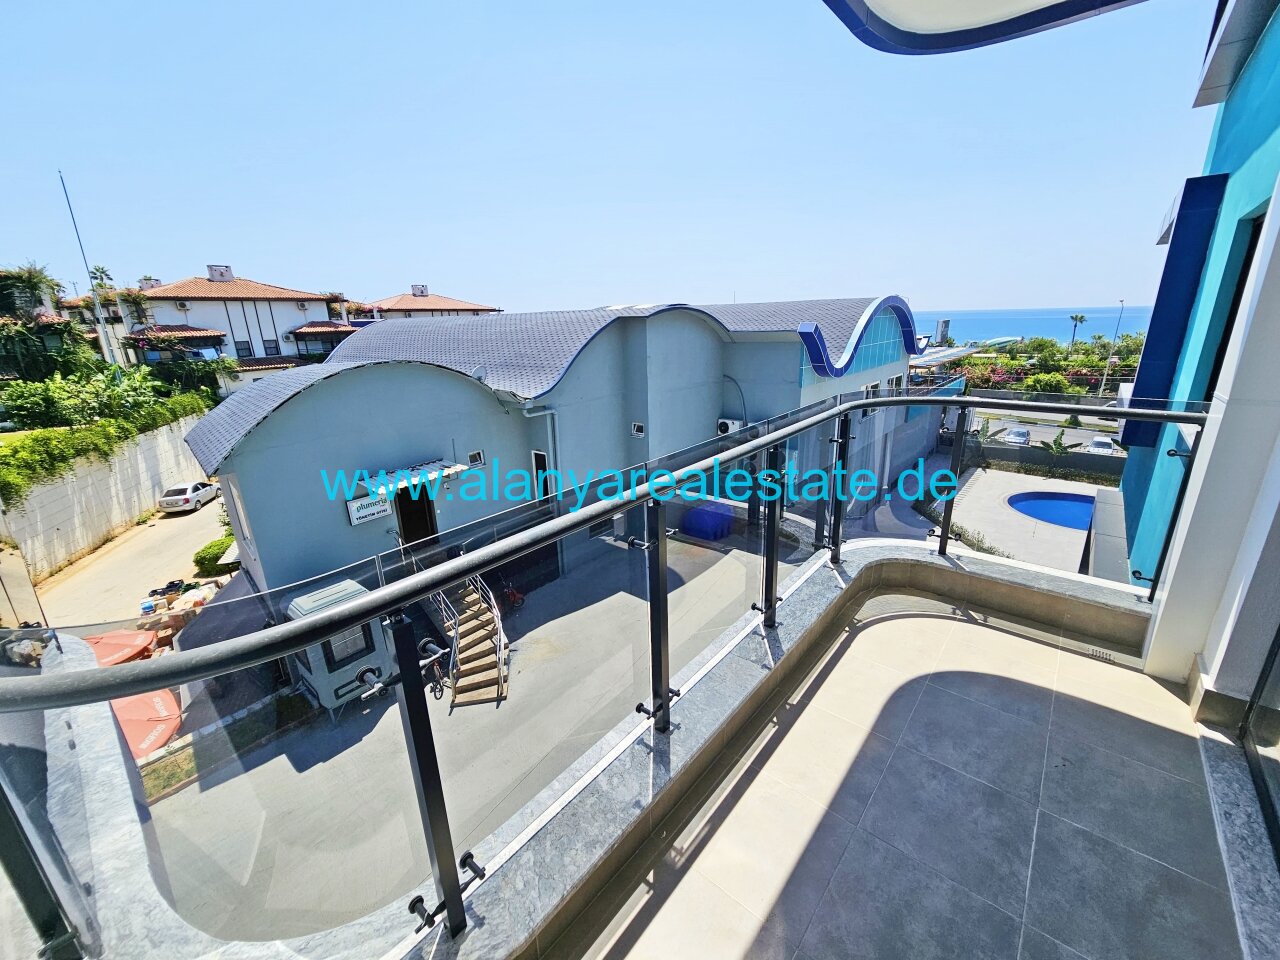 Brandneue Luxus Residence in Top Lage in direkter Strandnähe mit Pool